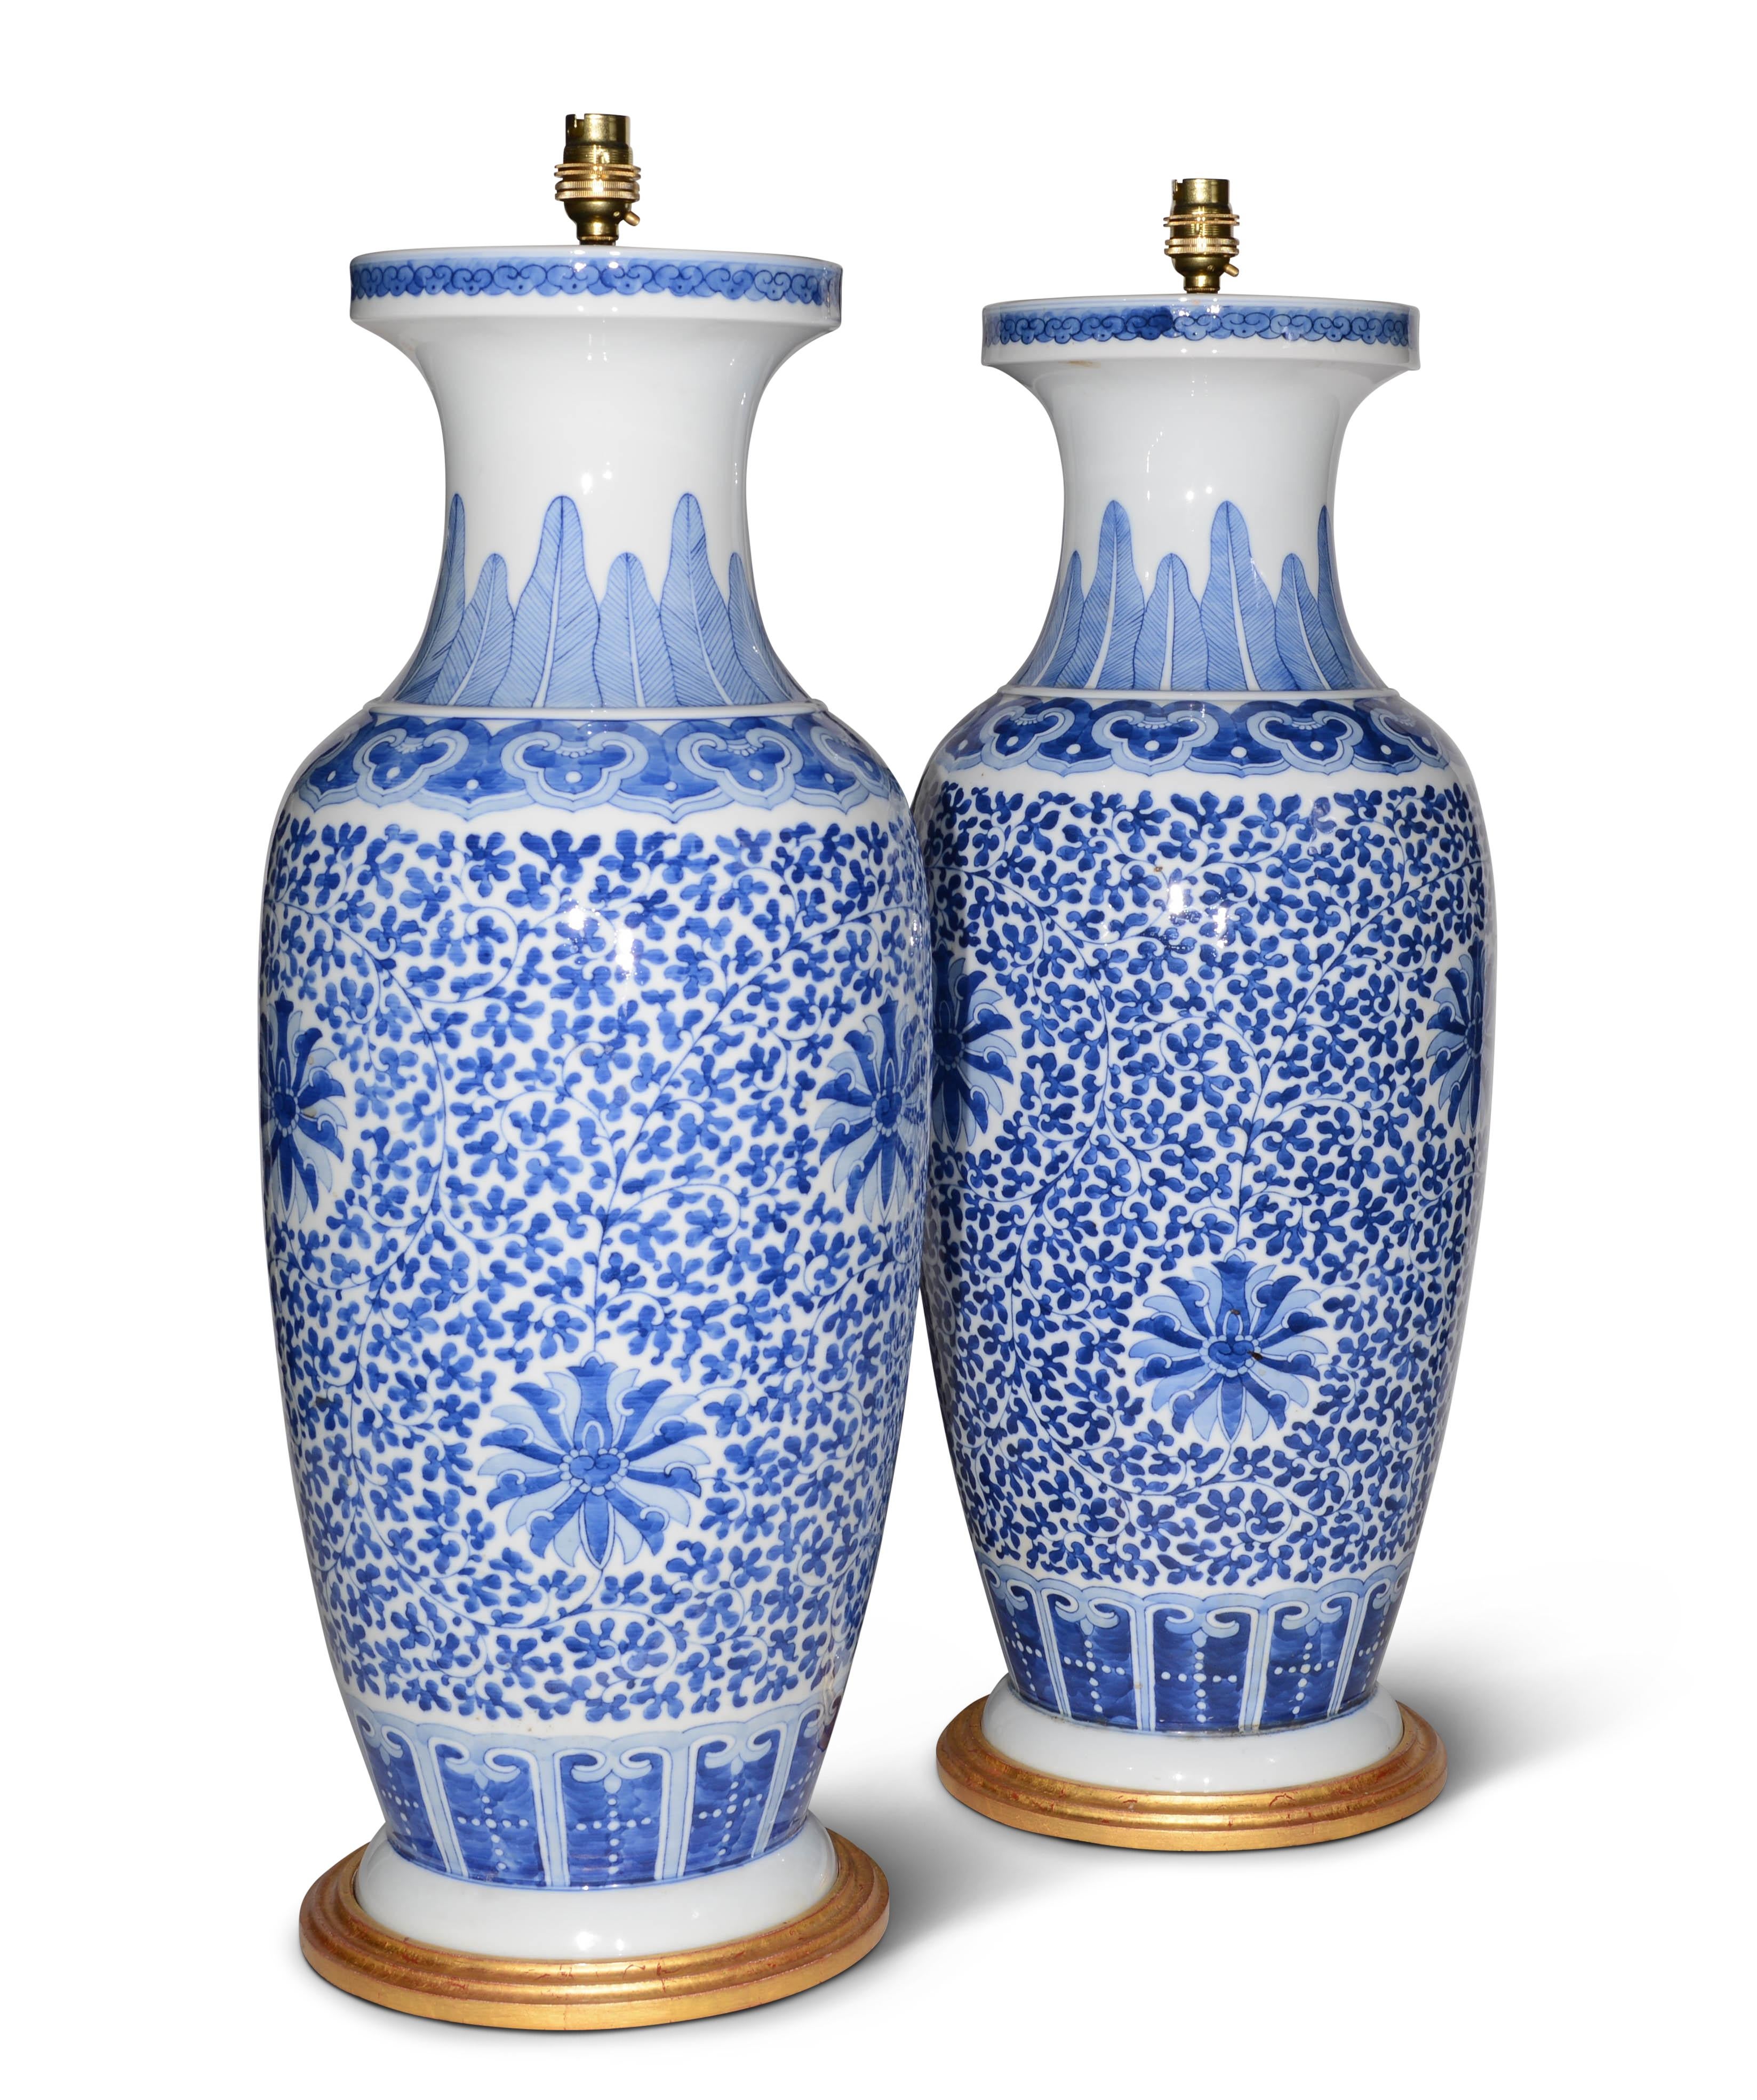 Une belle paire de grands vases balustres chinois bleus et blancs, décorés dans des tons bleus et blancs à la manière de Kangxi, maintenant montés comme des lampes avec des bases tournées dorées à la main.

Hauteur des vases : 24 1/4 in (62 cm), y